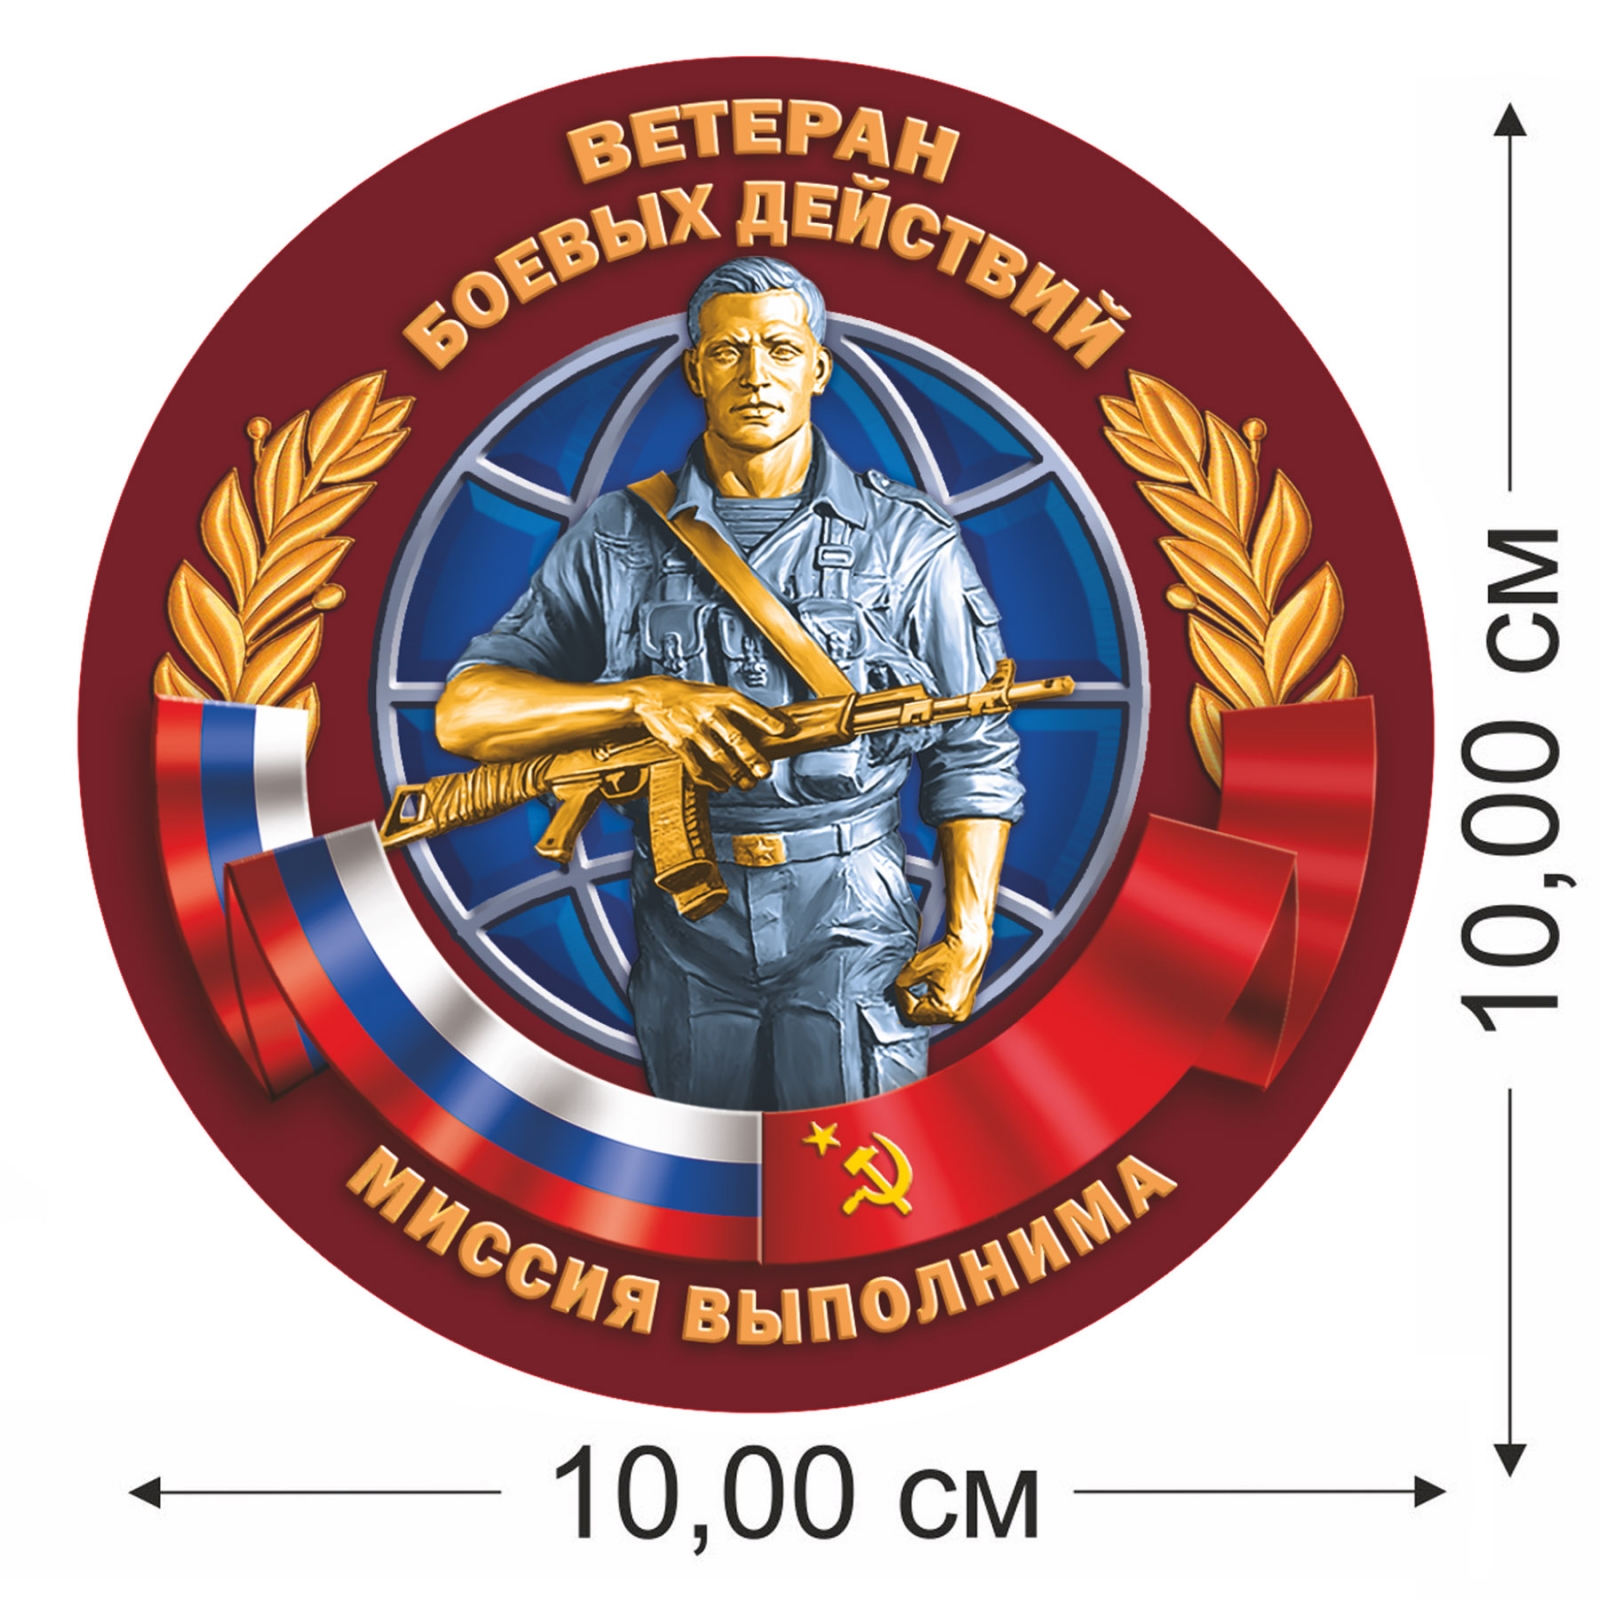 Сувенирная наклейка Ветерану боевых действий 